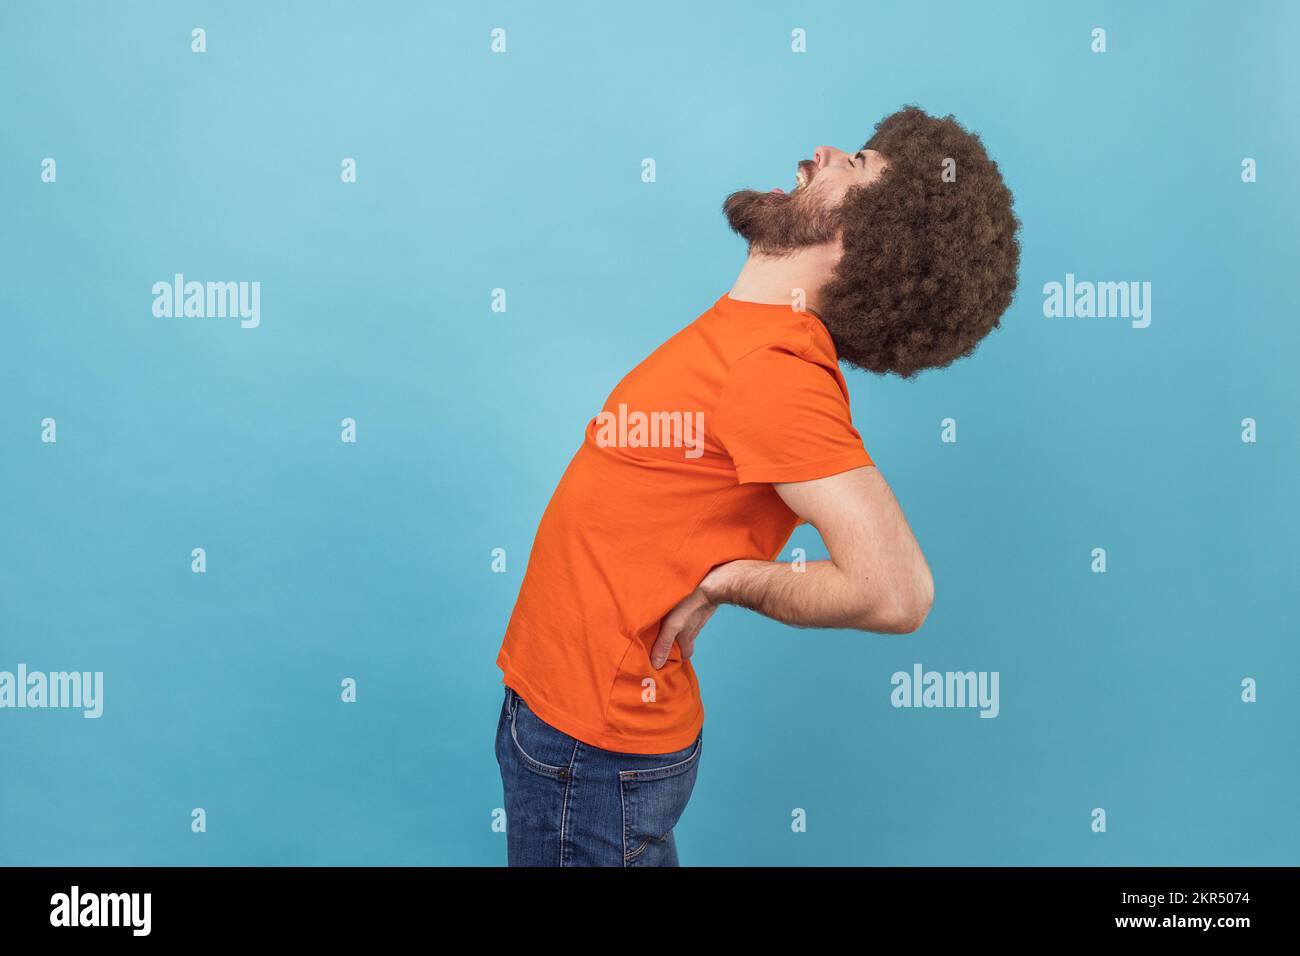 Vue latérale portrait d'un homme avec une coiffure afro portant un T-shirt orange debout avec des yeux fermés, souffrant de douleurs dans le bas du dos, une inflammation des reins. Studio d'intérieur isolé sur fond bleu. Banque D'Images